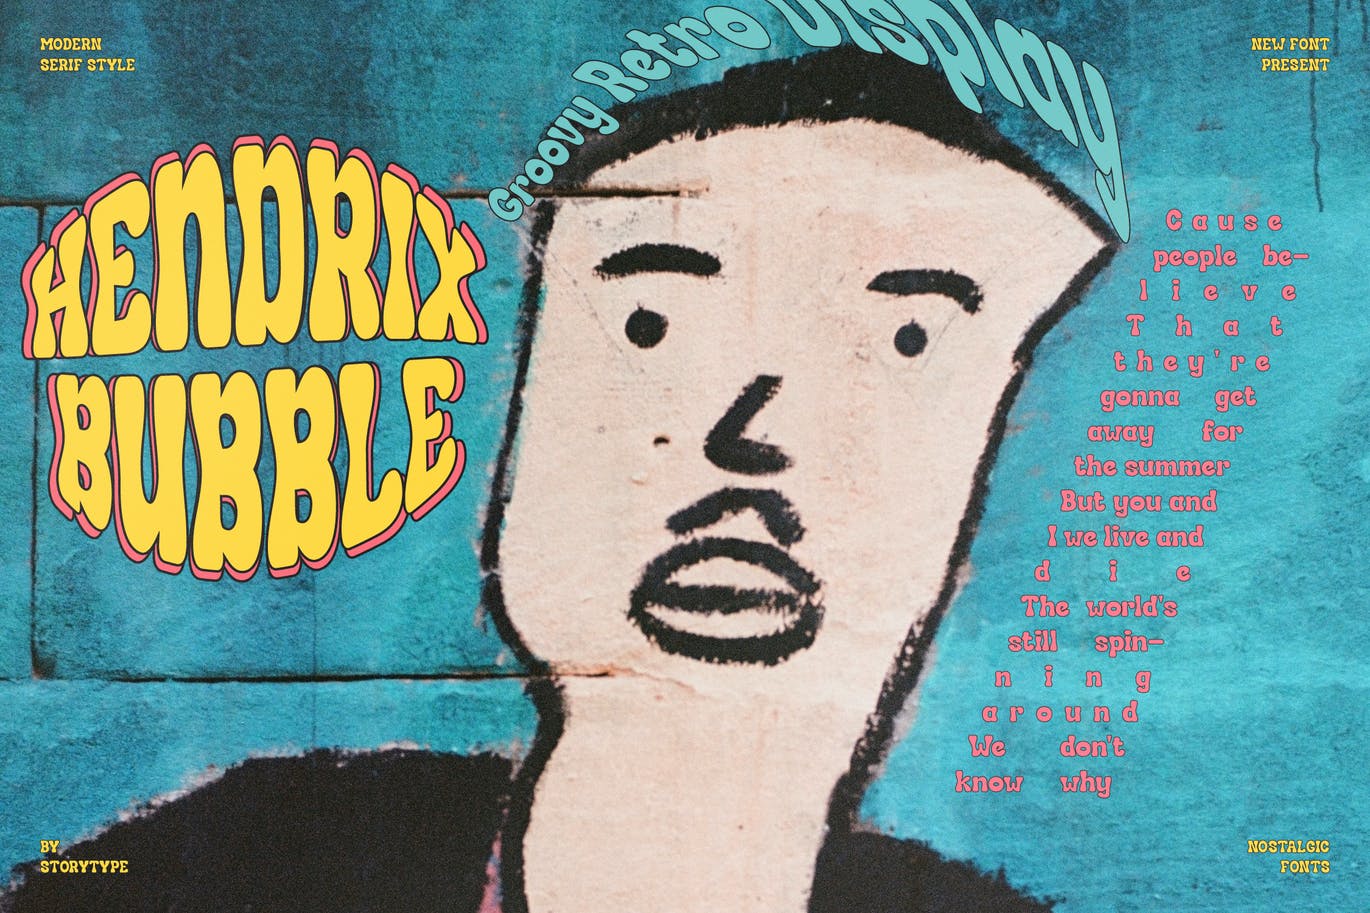 经典复古风格字体素材 Hendrix Bubble Groovy Retro Display 设计素材 第14张